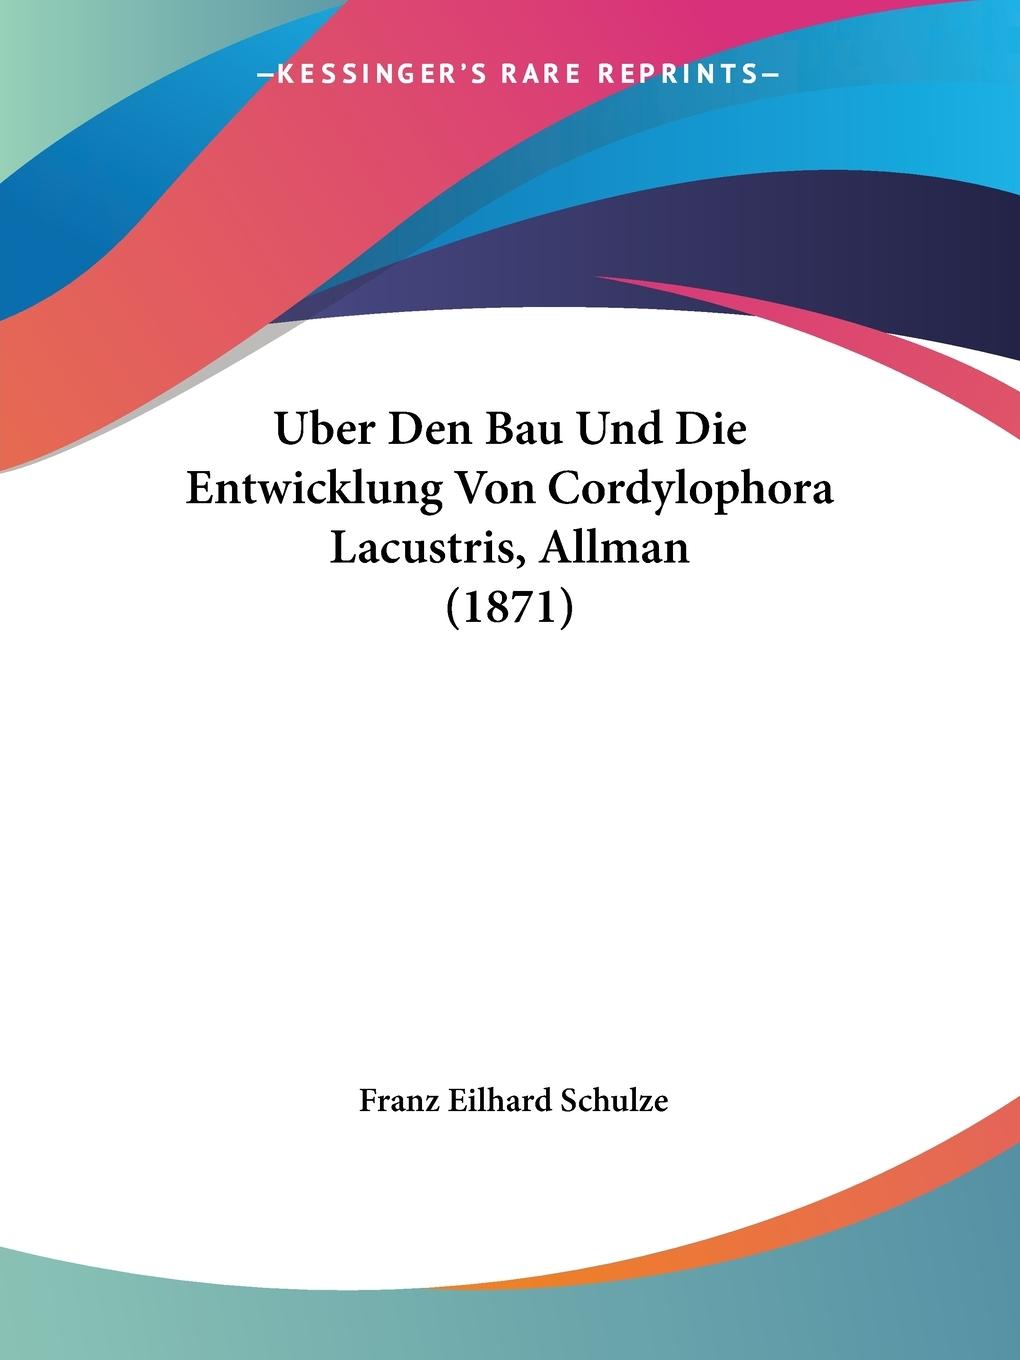 Uber Den Bau Und Die Entwicklung Von Cordylophora Lacustris, Allman (1871) - Schulze, Franz Eilhard